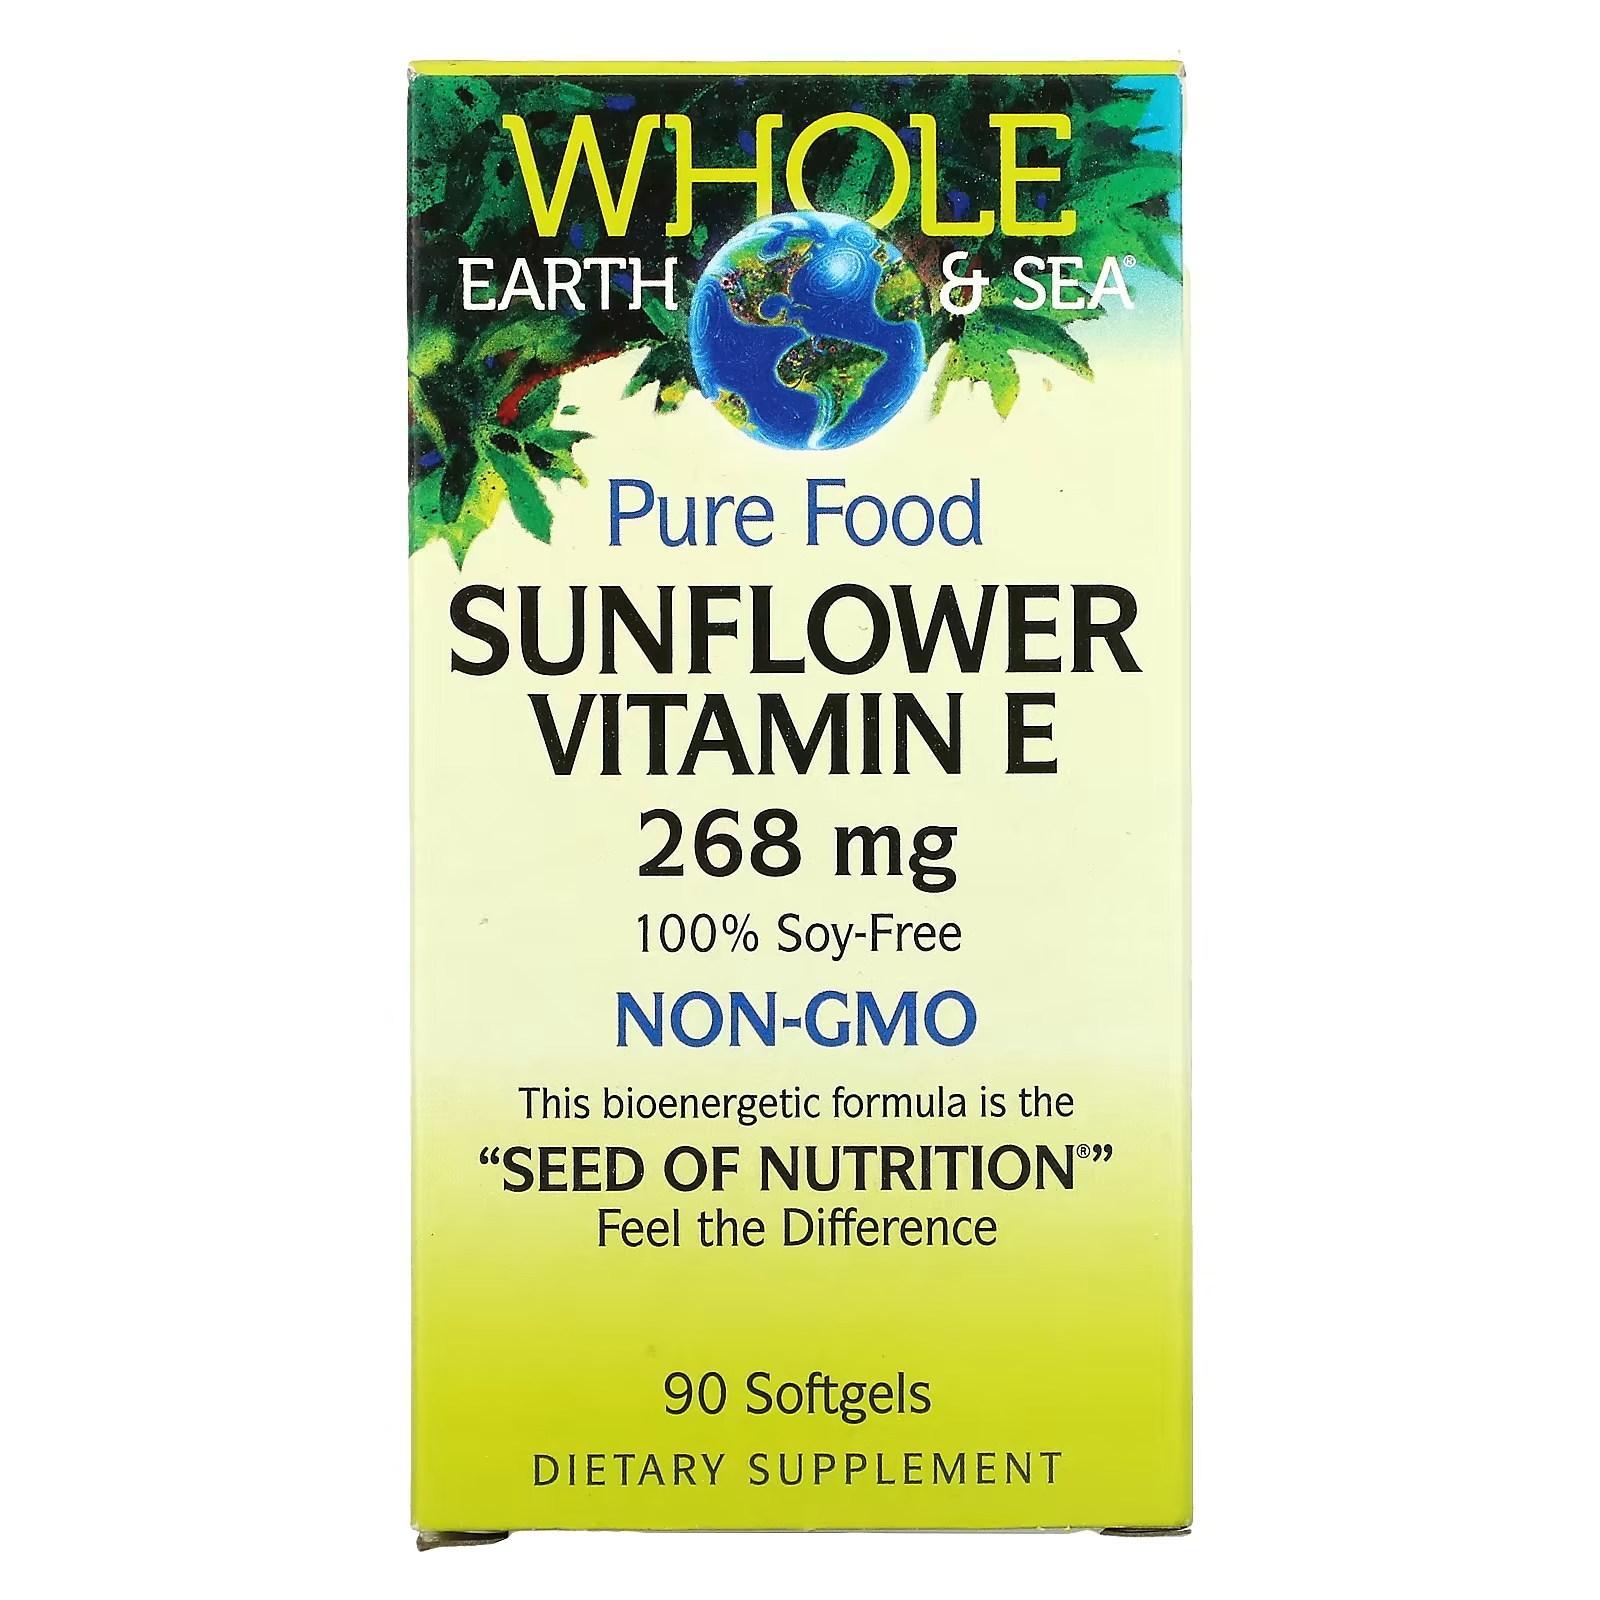 Natural Factors Whole Earth & Sea витамин Е из подсолнечника 268 мг, 90 капсул